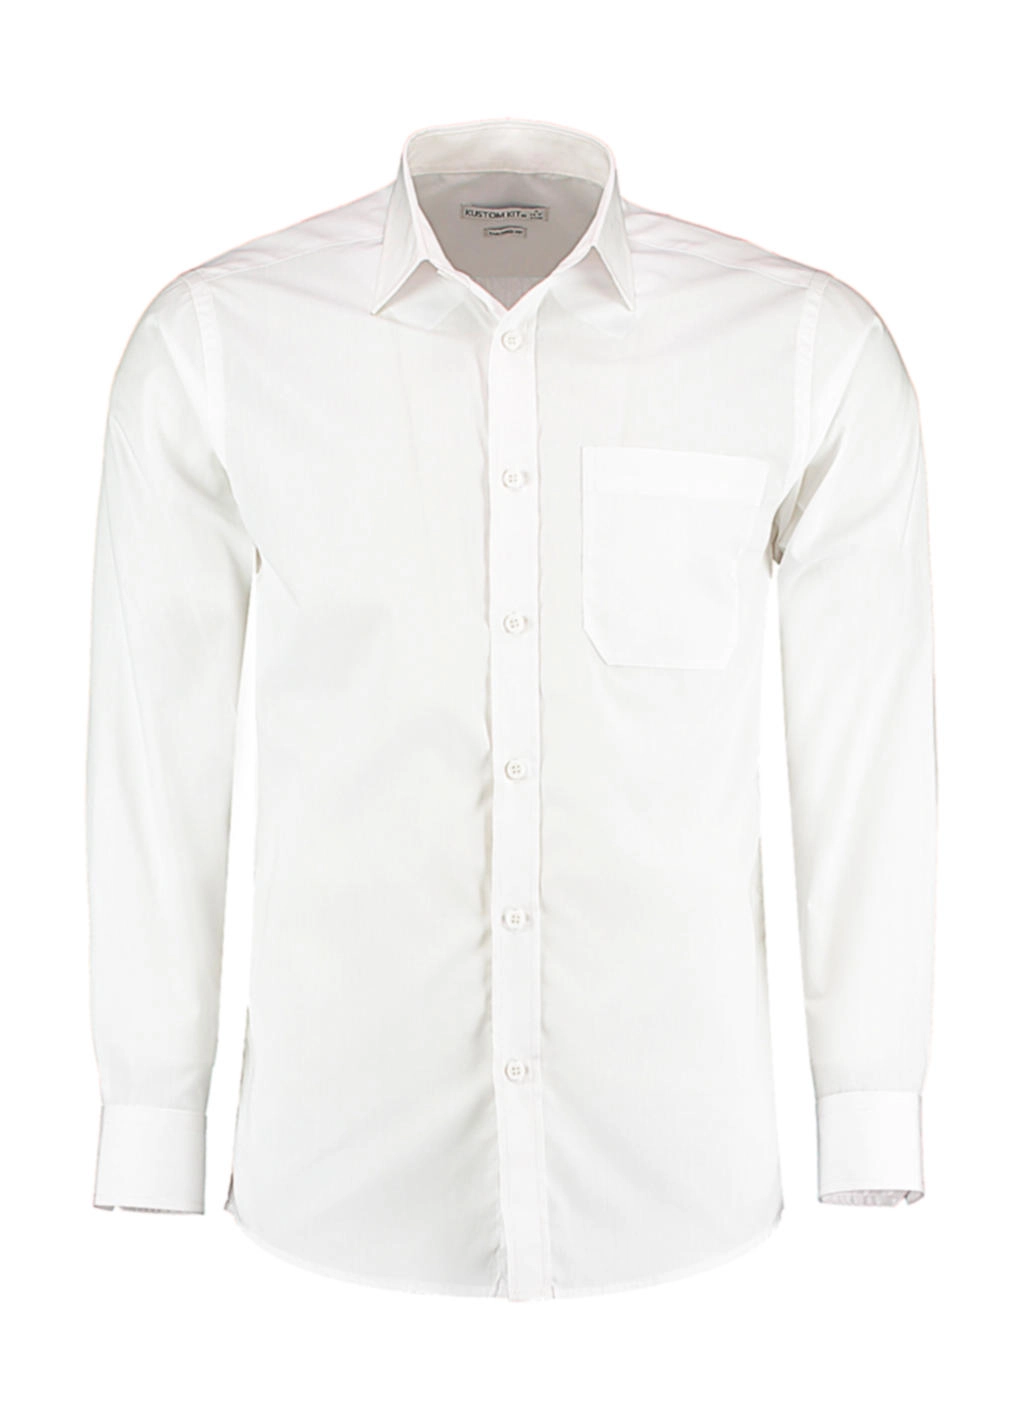 Tailored Fit Poplin Shirt zum Besticken und Bedrucken in der Farbe White mit Ihren Logo, Schriftzug oder Motiv.